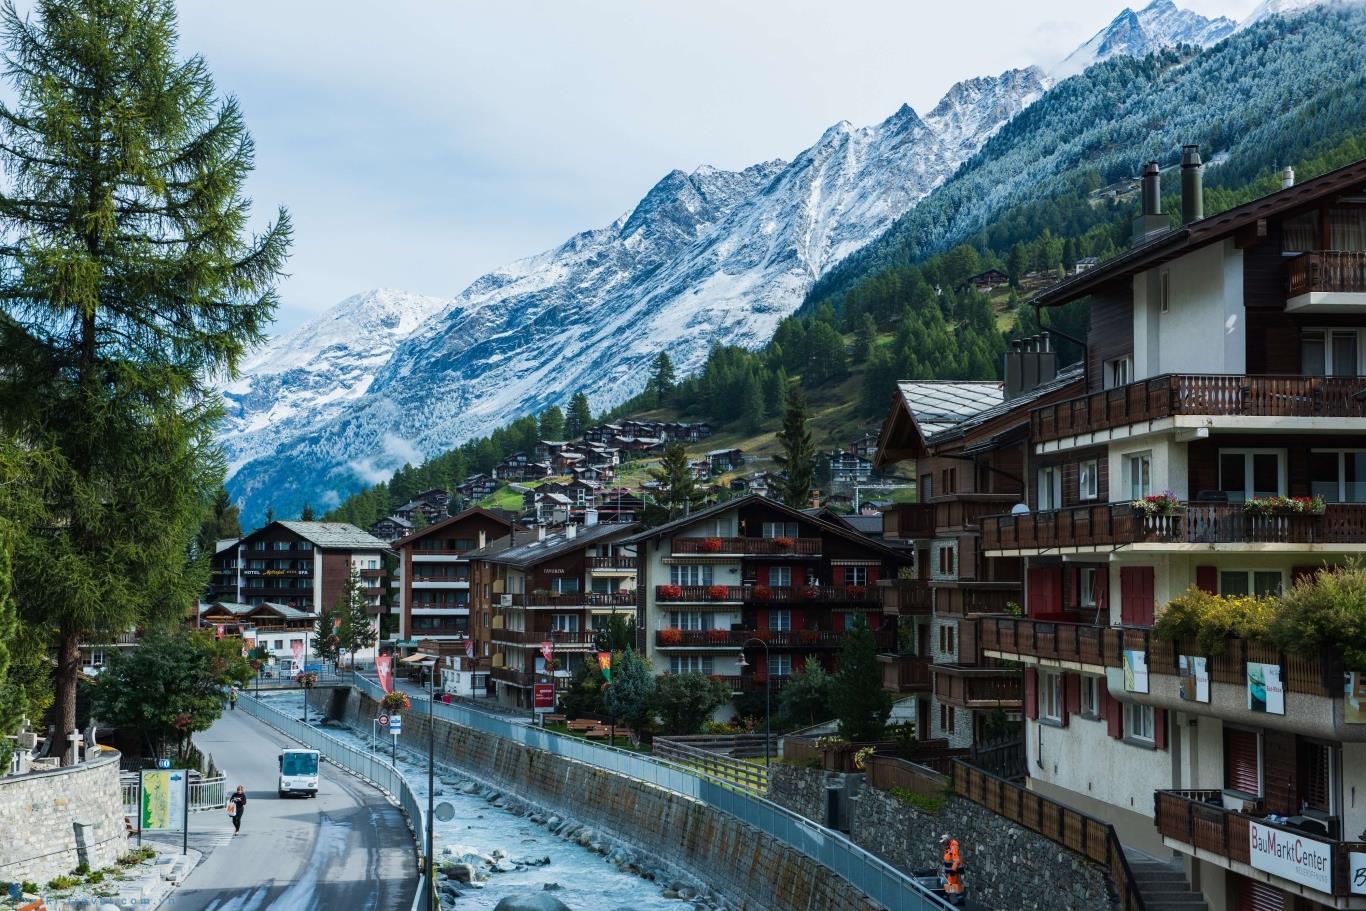 Thụy Sĩ, lãng mạn cảnh sắc mùa đông tựa tranh vẽ